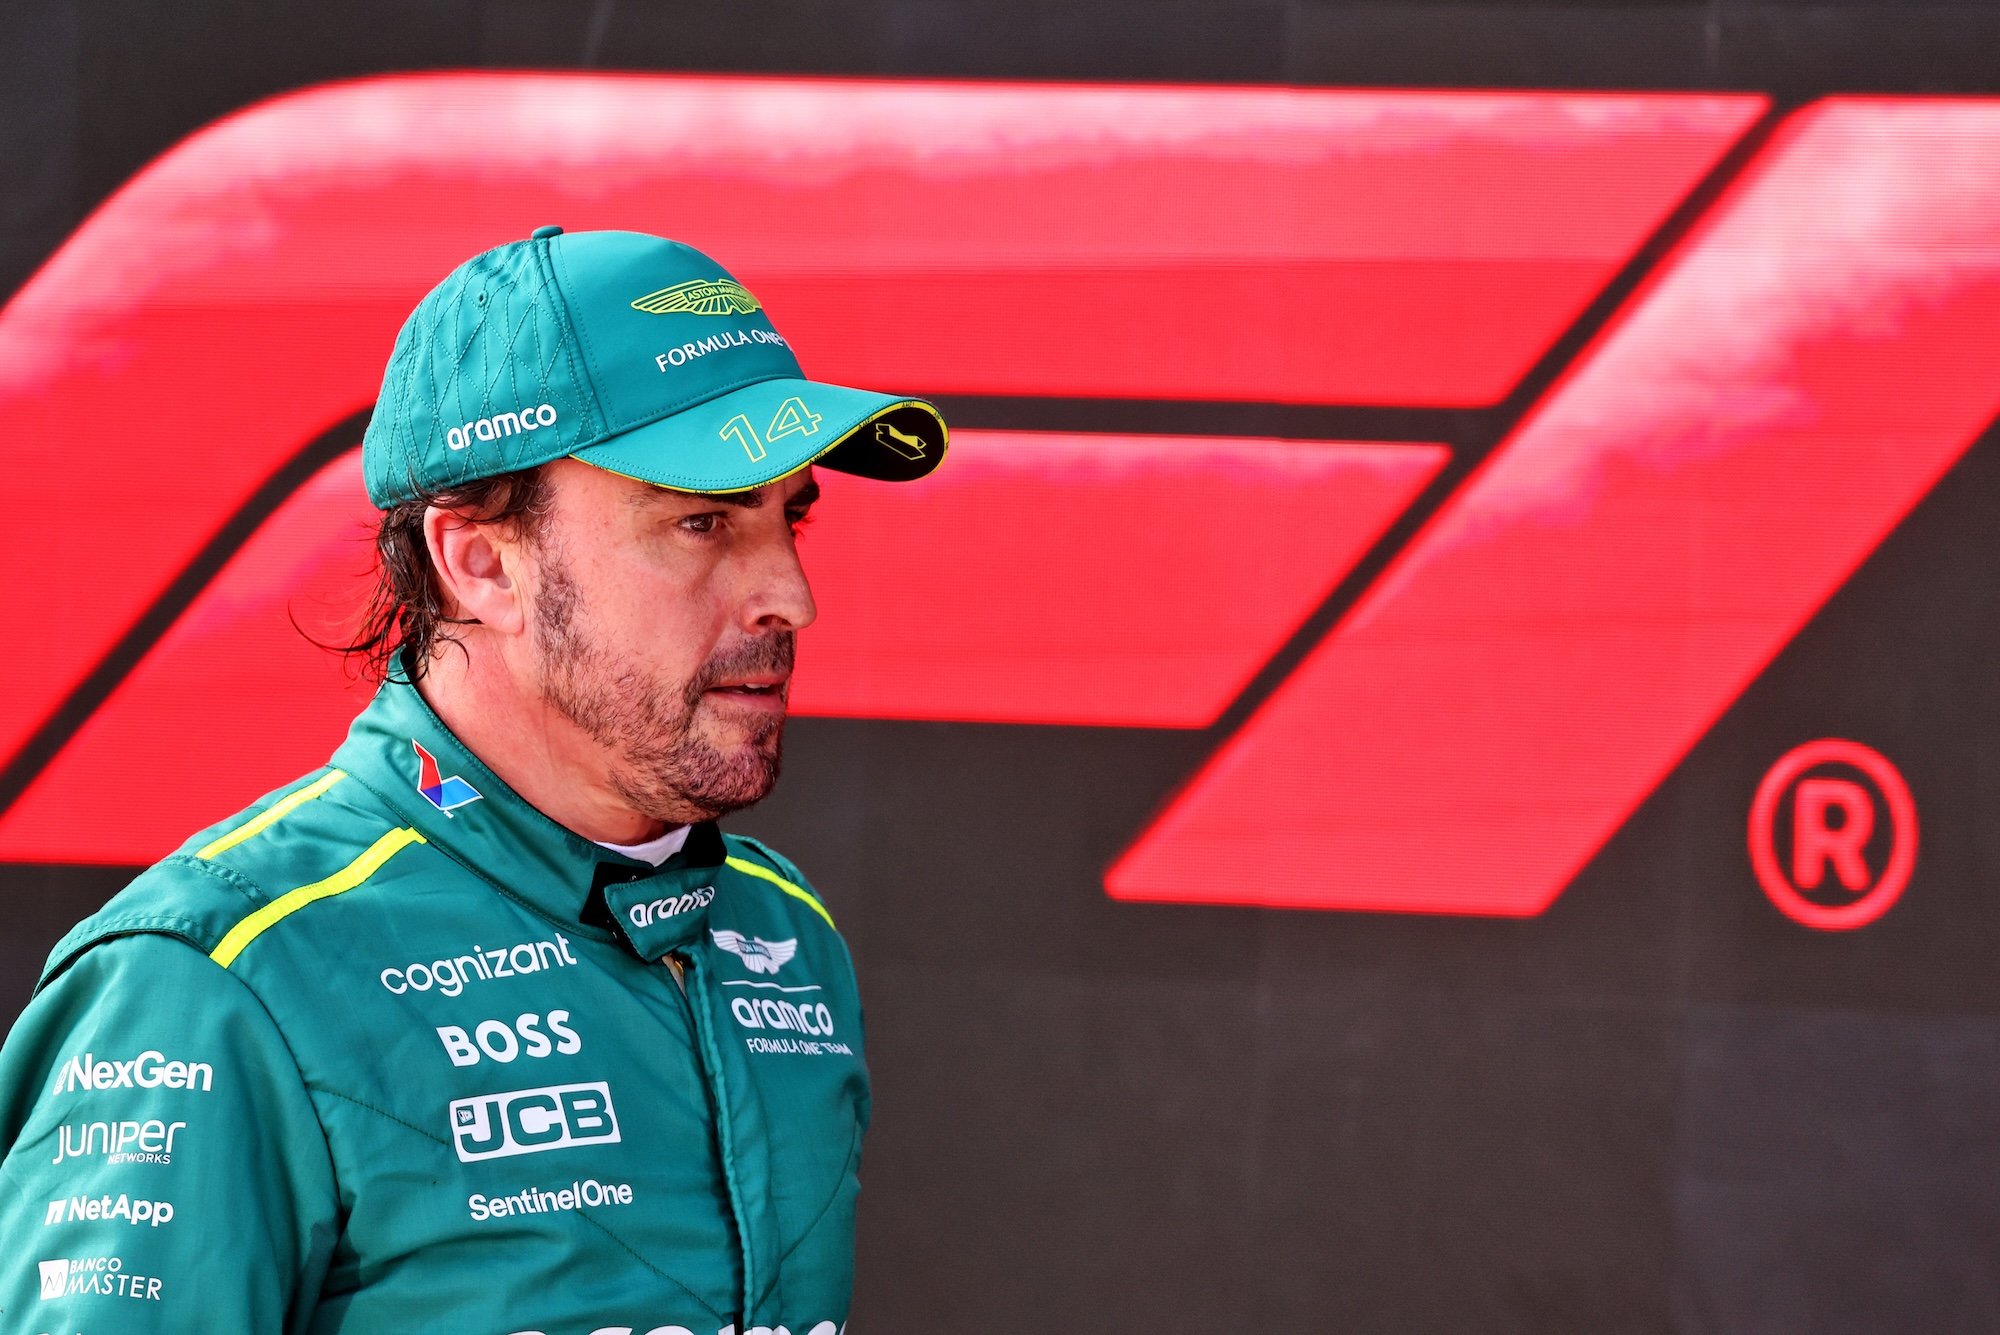 Alonso critica castigos con puntos en superlicencia